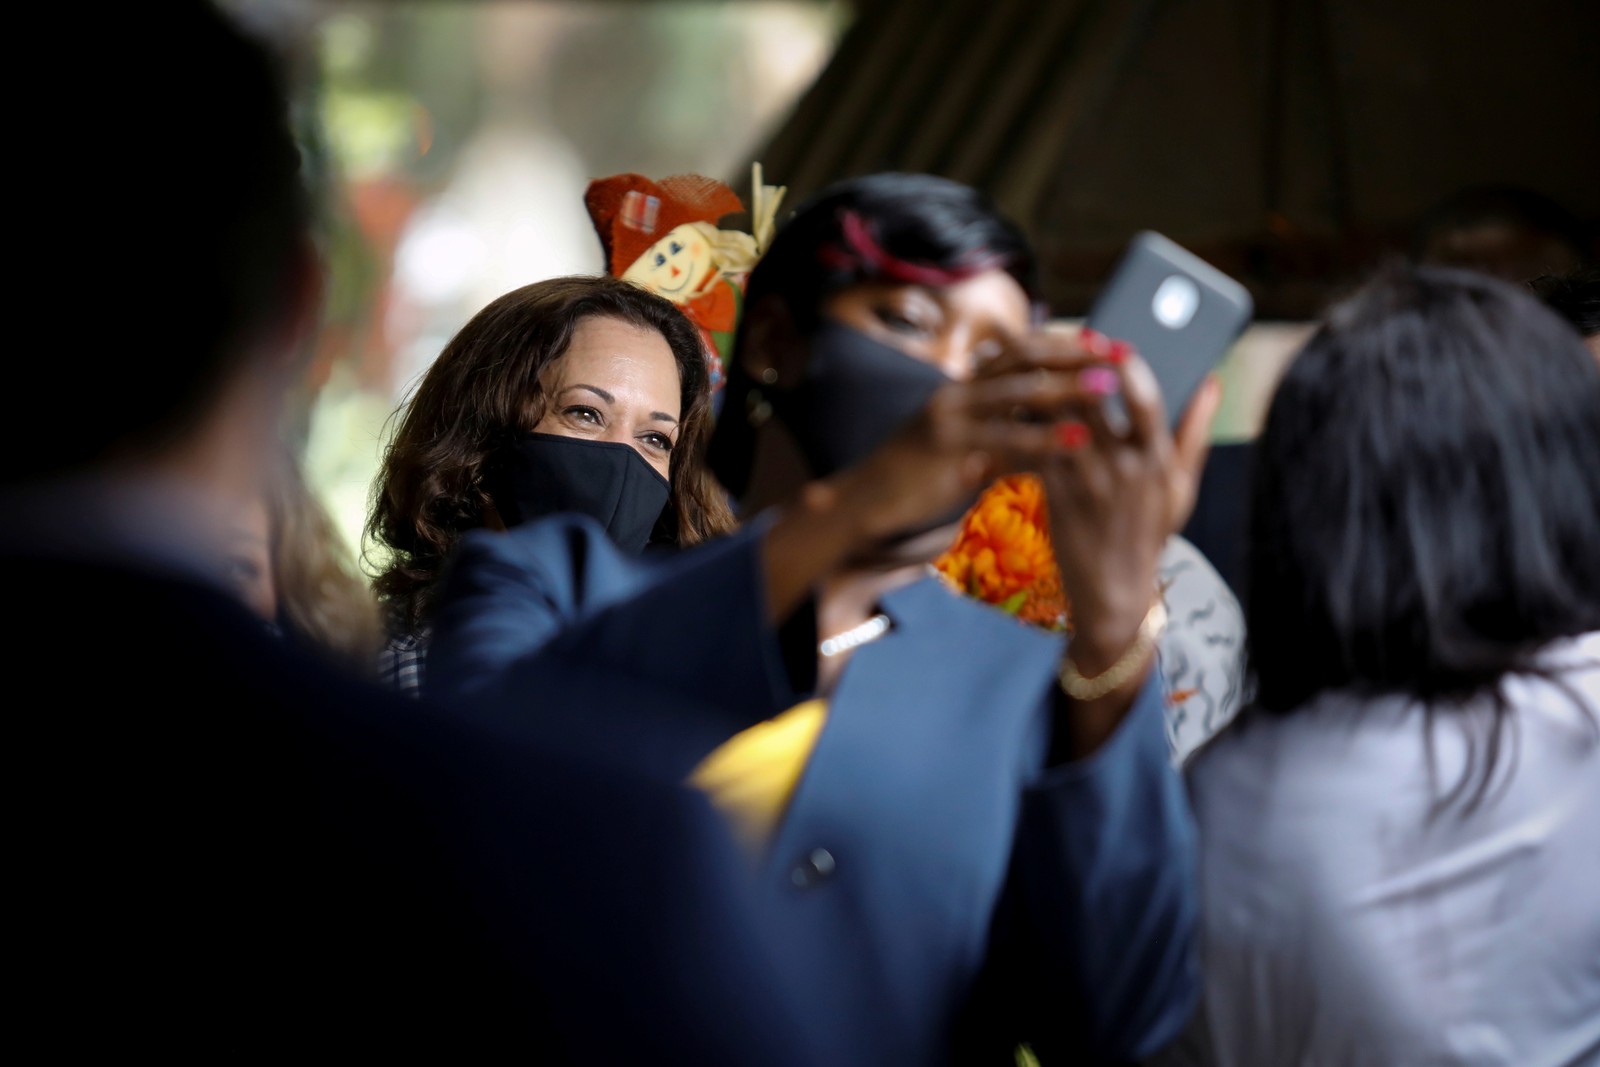 A senadora Kamala Harris, candidata à vice-presidência, posa para uma selfie com apoiadores durante um evento em Fort Lauderdale, Flórida, em 31 de outubro. Harris nasceu em 20 de outubro de 1964, em Oakland, Califórnia, na época um núcleo de ativismo pelos direitos civis e contra a guerraREUTERS